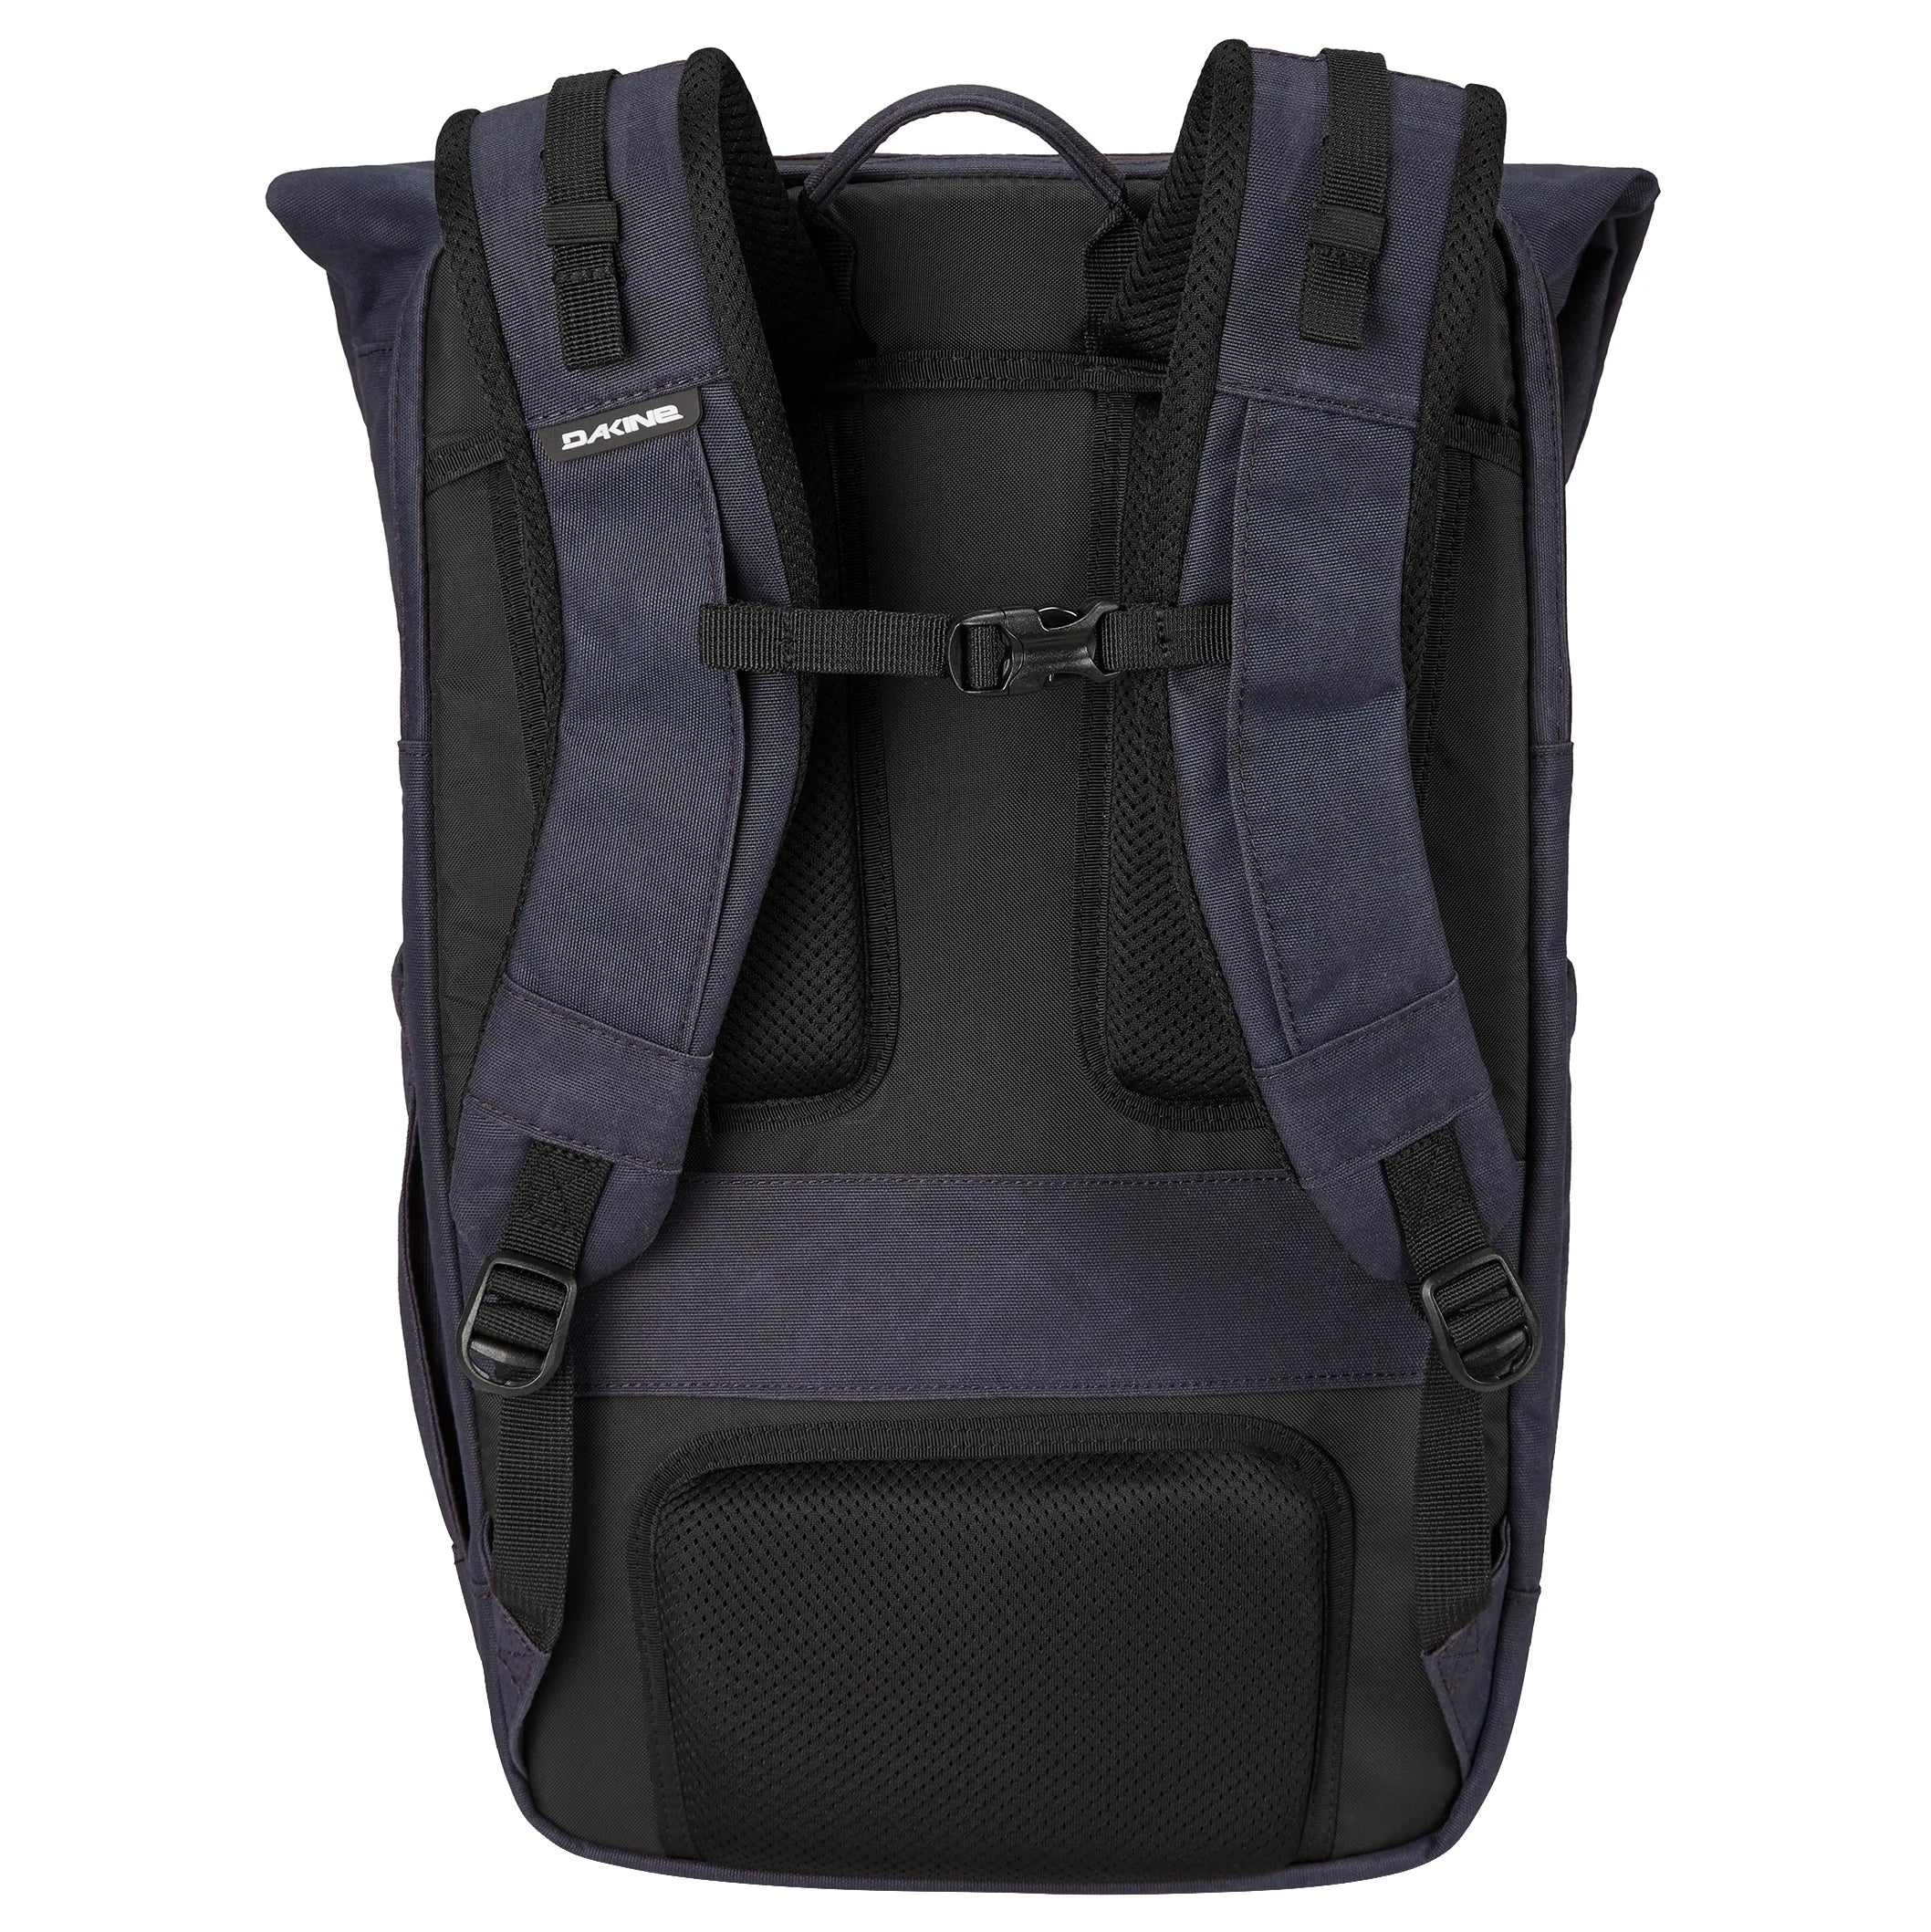 Dakine Packs & Bags Infinity Pack 21L Backpack 46 cm - geyser gray